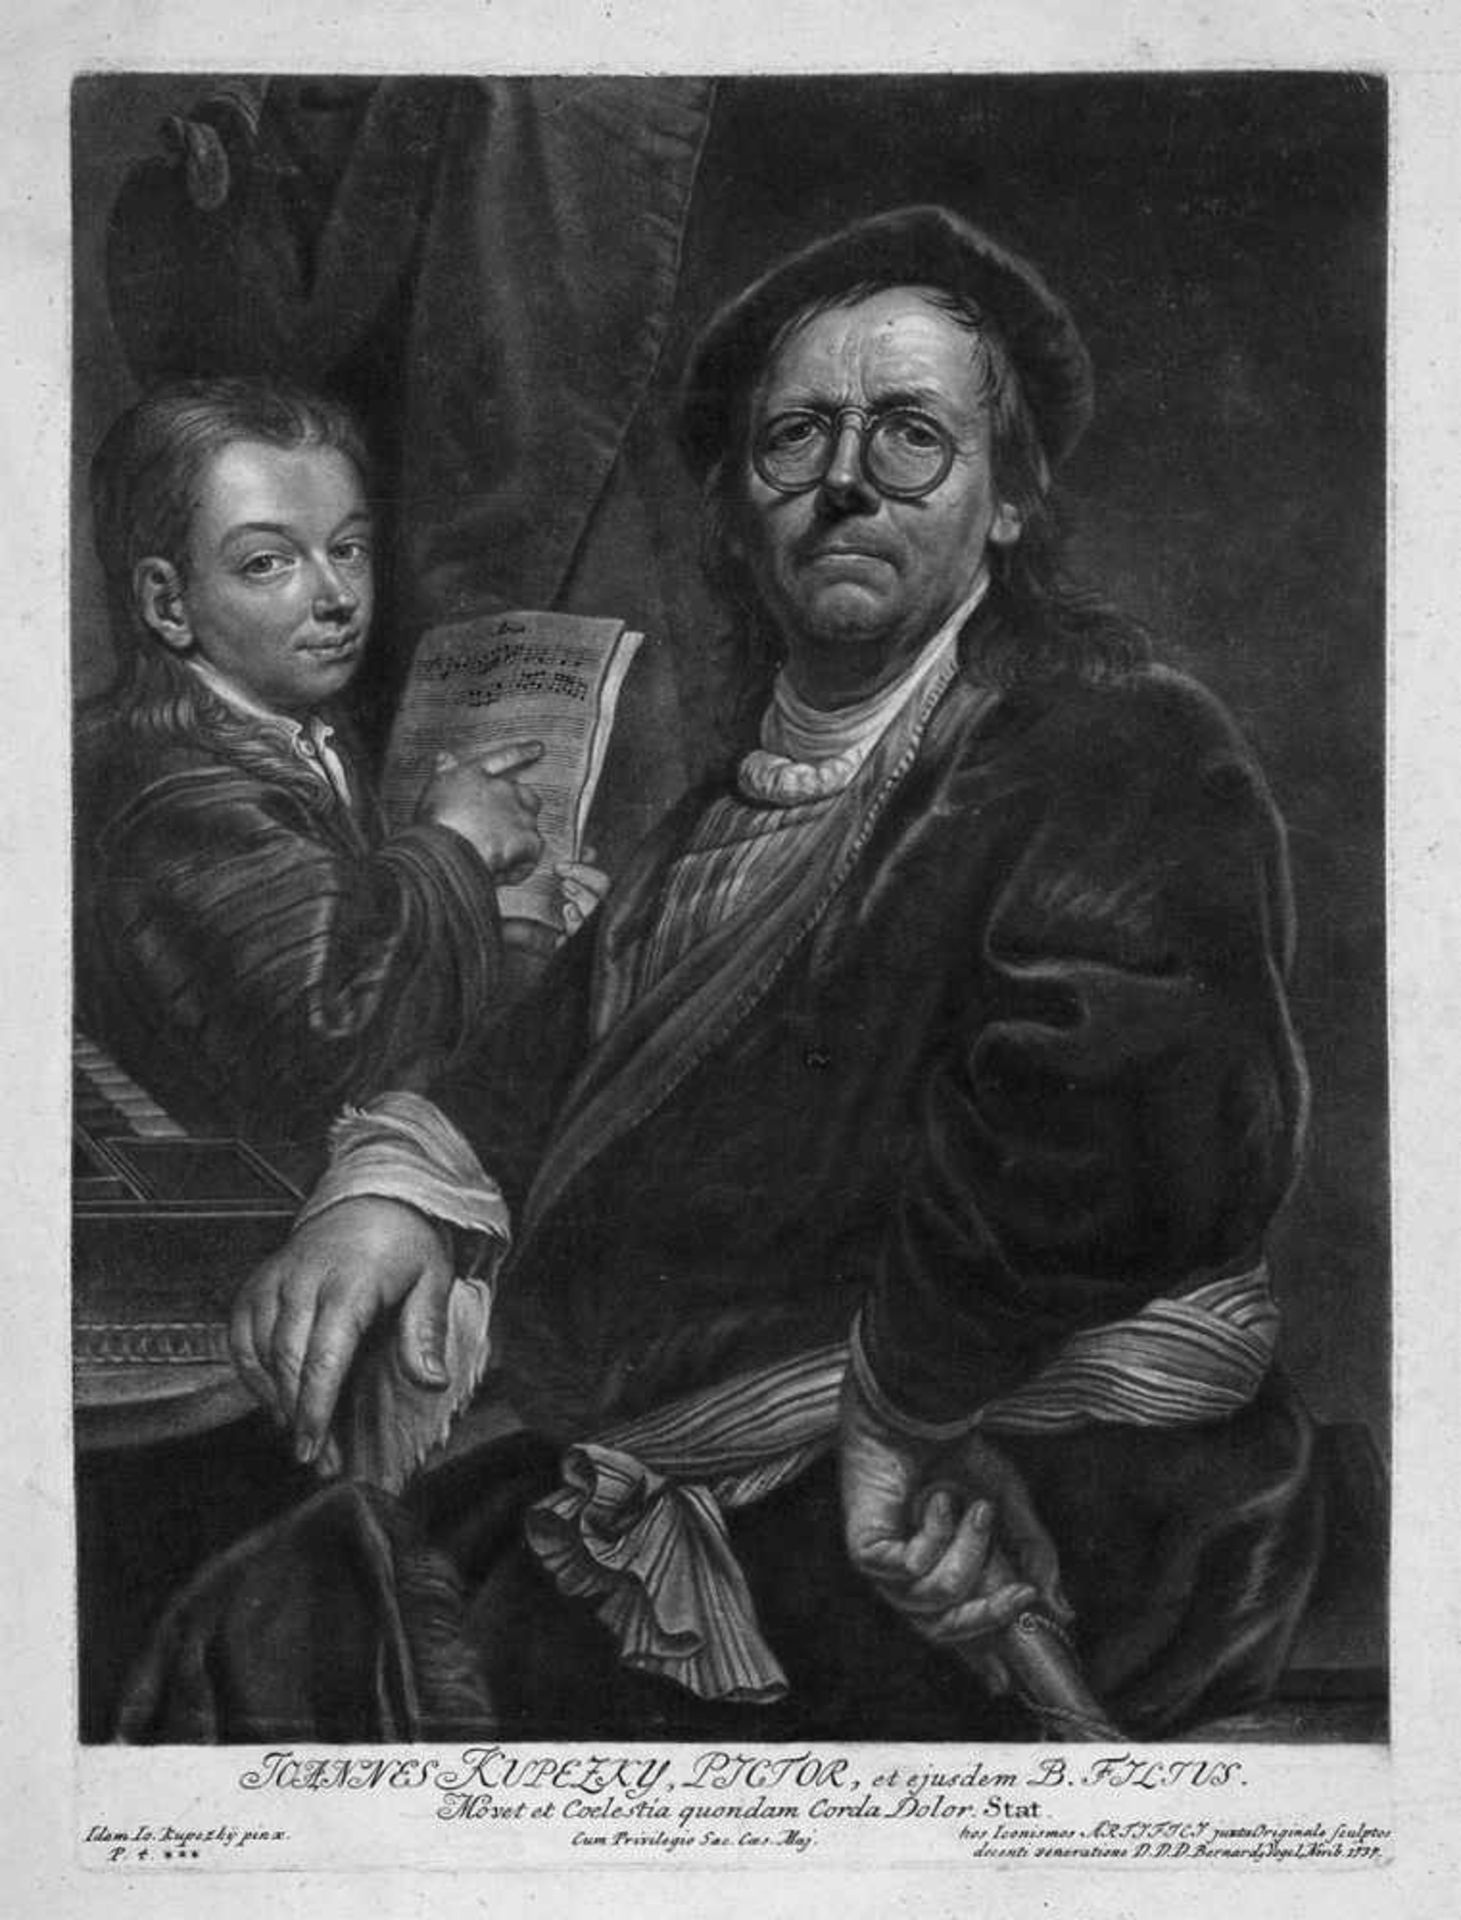 Vogel, Bernhard: Bildnis des Malers Johann Kupetzky mit seinem Sohn am SpinettBildnis des Malers